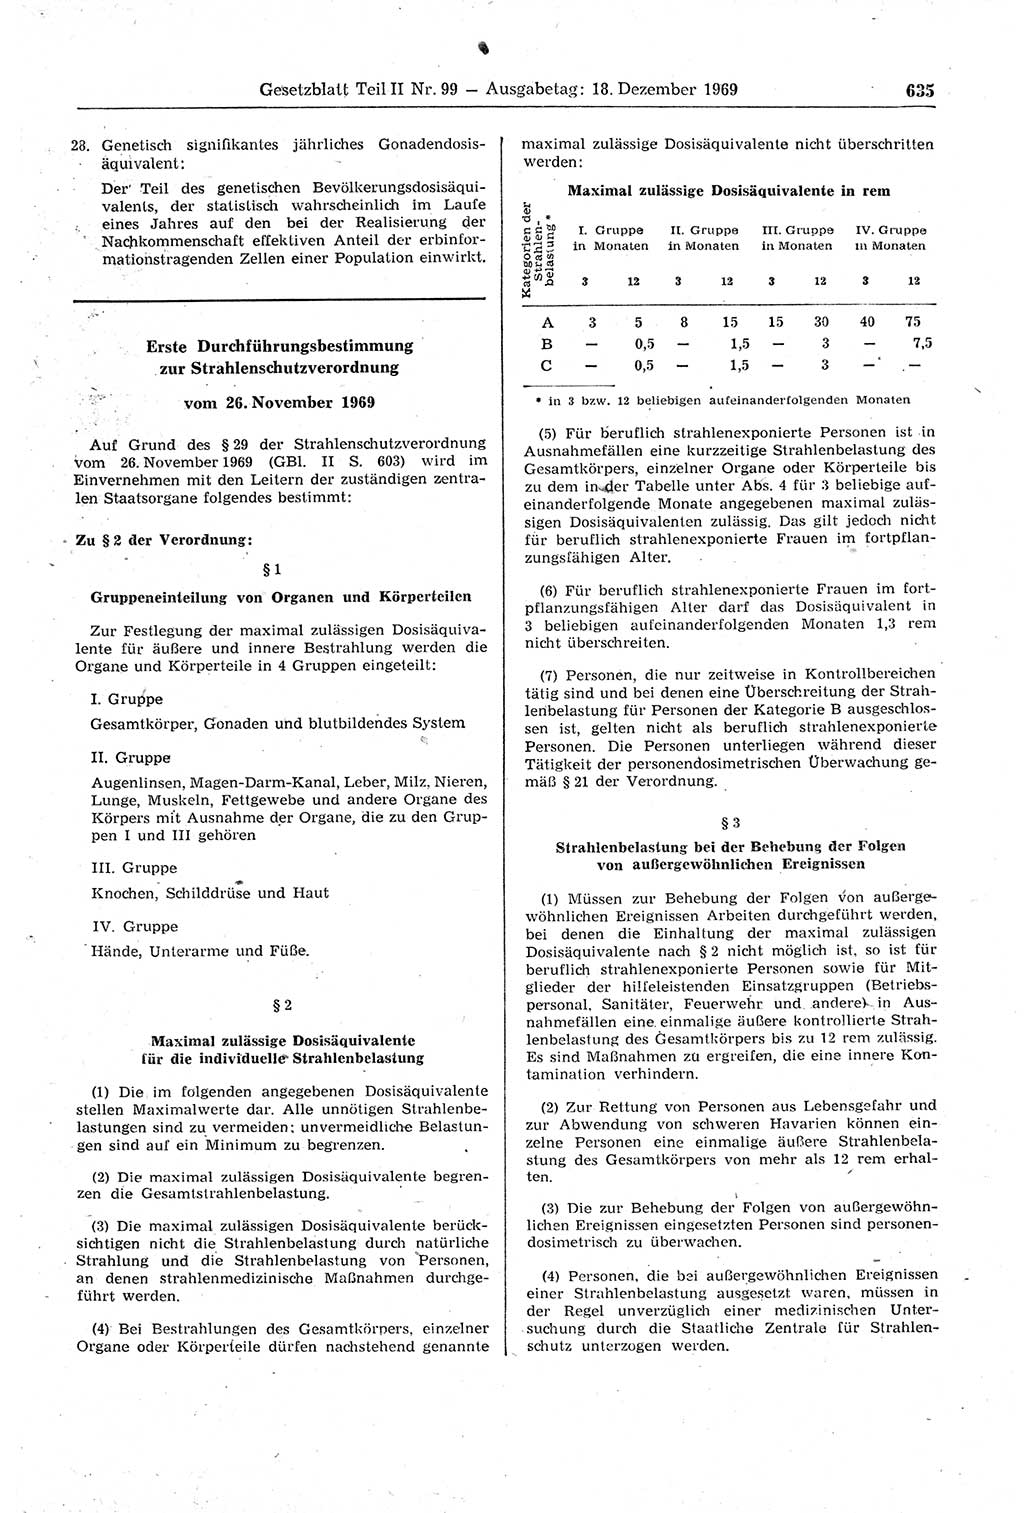 Gesetzblatt (GBl.) der Deutschen Demokratischen Republik (DDR) Teil ⅠⅠ 1969, Seite 635 (GBl. DDR ⅠⅠ 1969, S. 635)